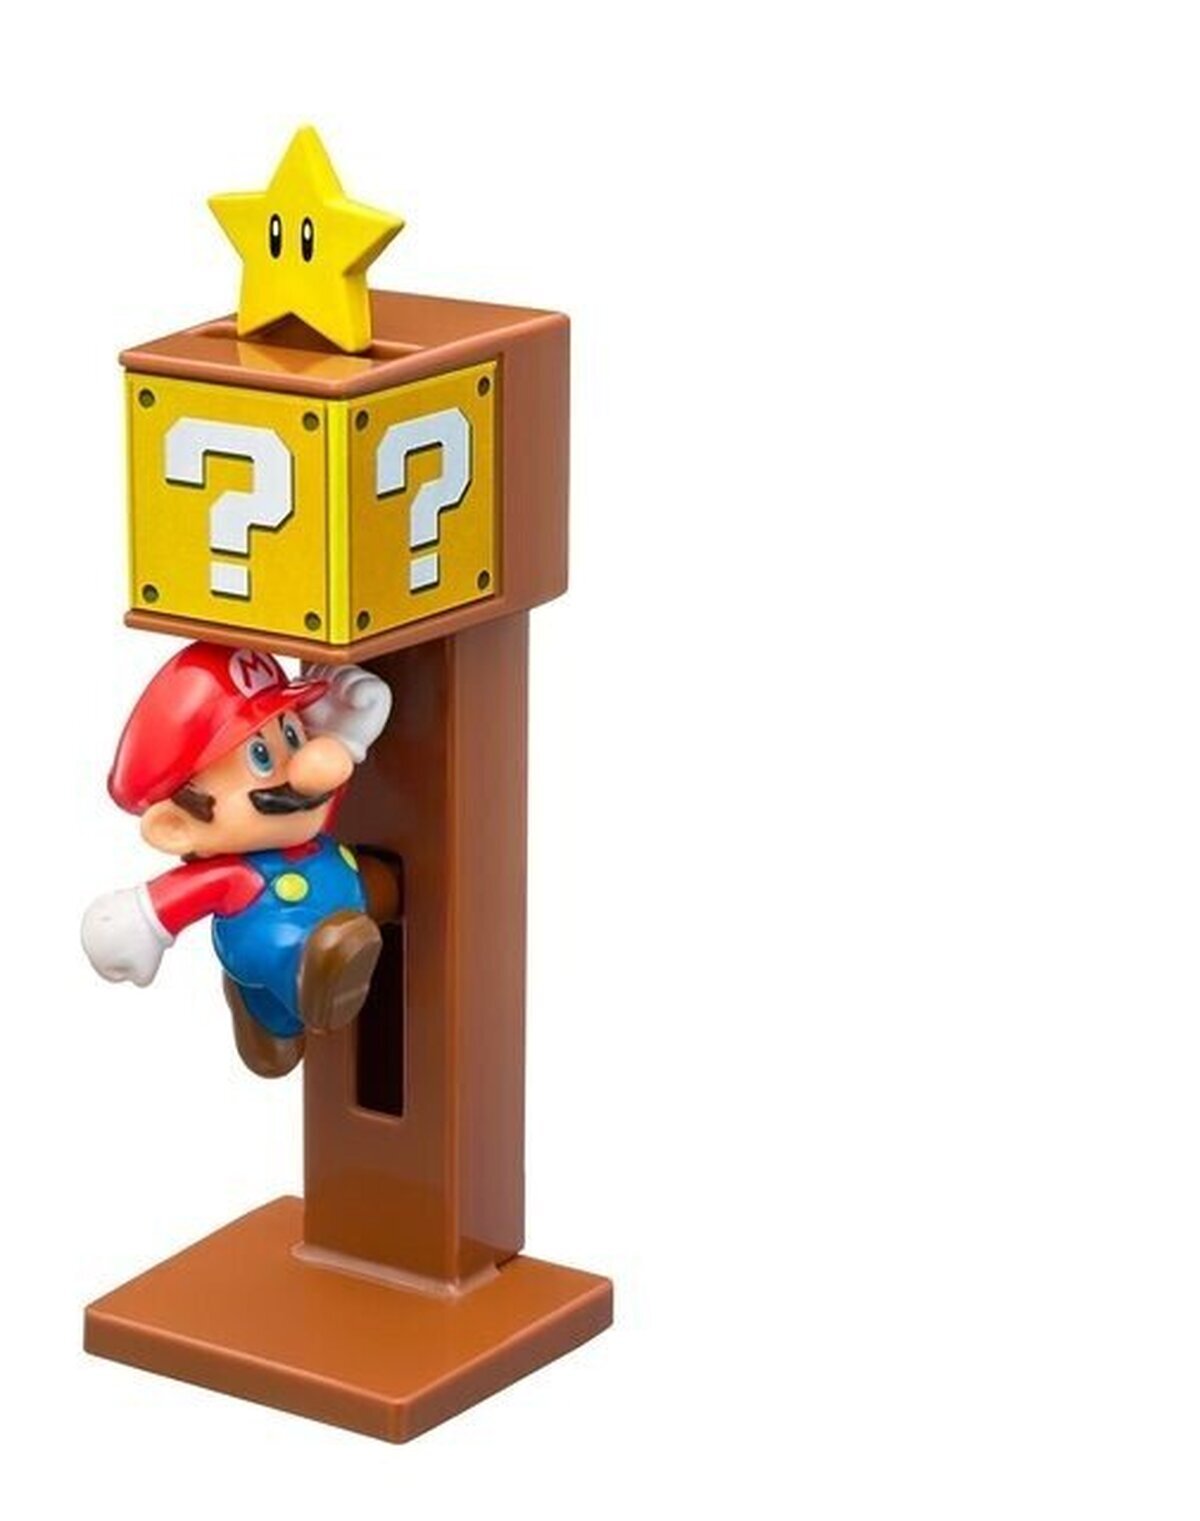 Mario provoca la obesidad con las nuevas figuras de McDonald’s